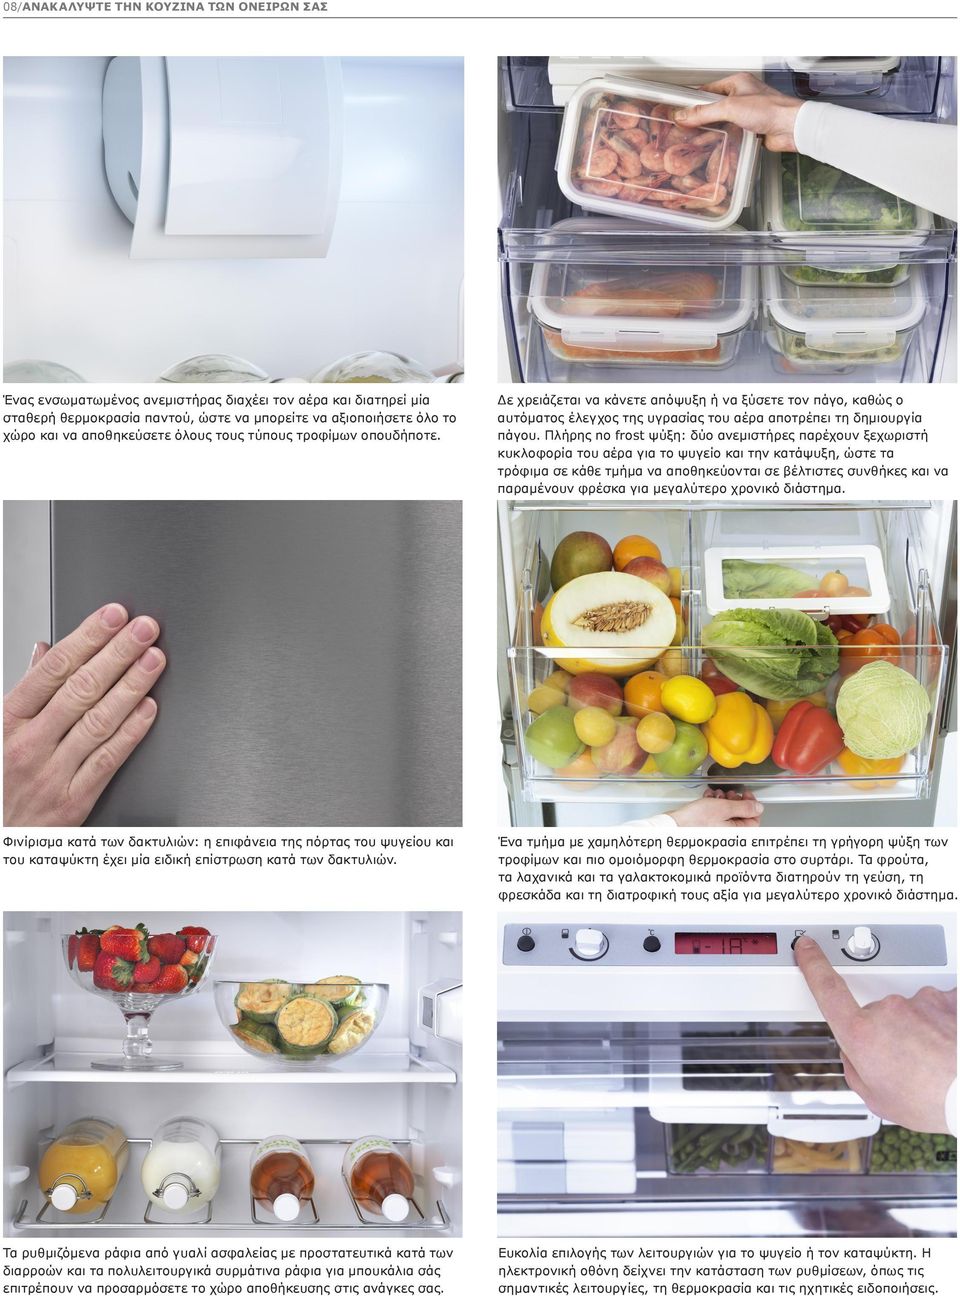 Πλήρης no frost ψύξη: δύο ανεμιστήρες παρέχουν ξεχωριστή κυκλοφορία του αέρα για το ψυγείο και την κατάψυξη, ώστε τα τρόφιμα σε κάθε τμήμα να αποθηκεύονται σε βέλτιστες συνθήκες και να παραμένουν